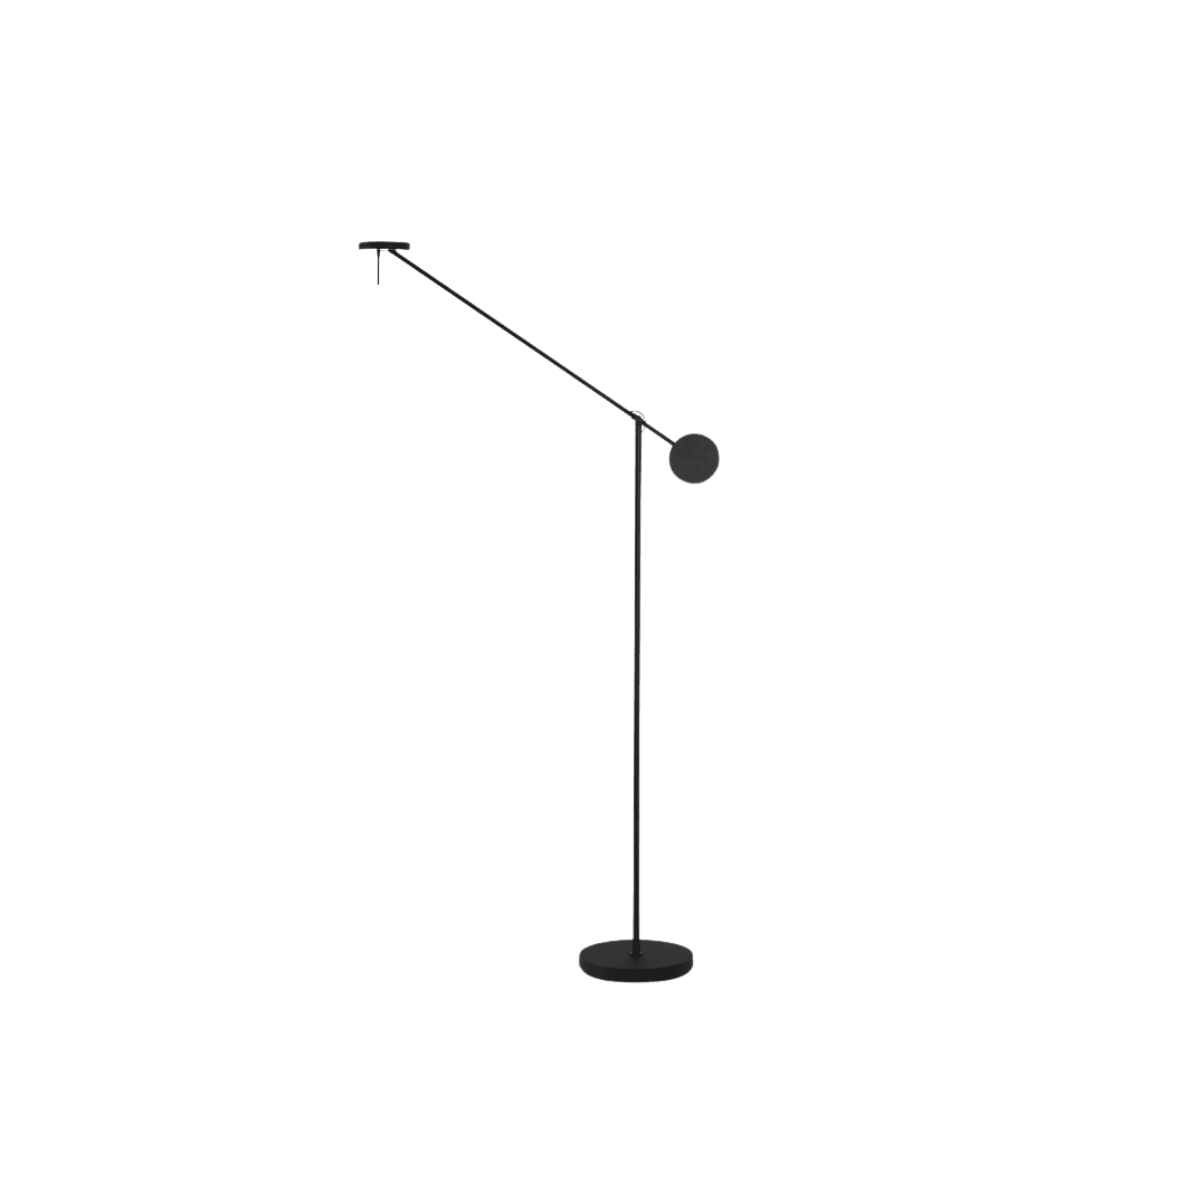 ORNE — decor studio - Luminária de Piso Coluna Moderna Minimalista Articulada Turi - undefined